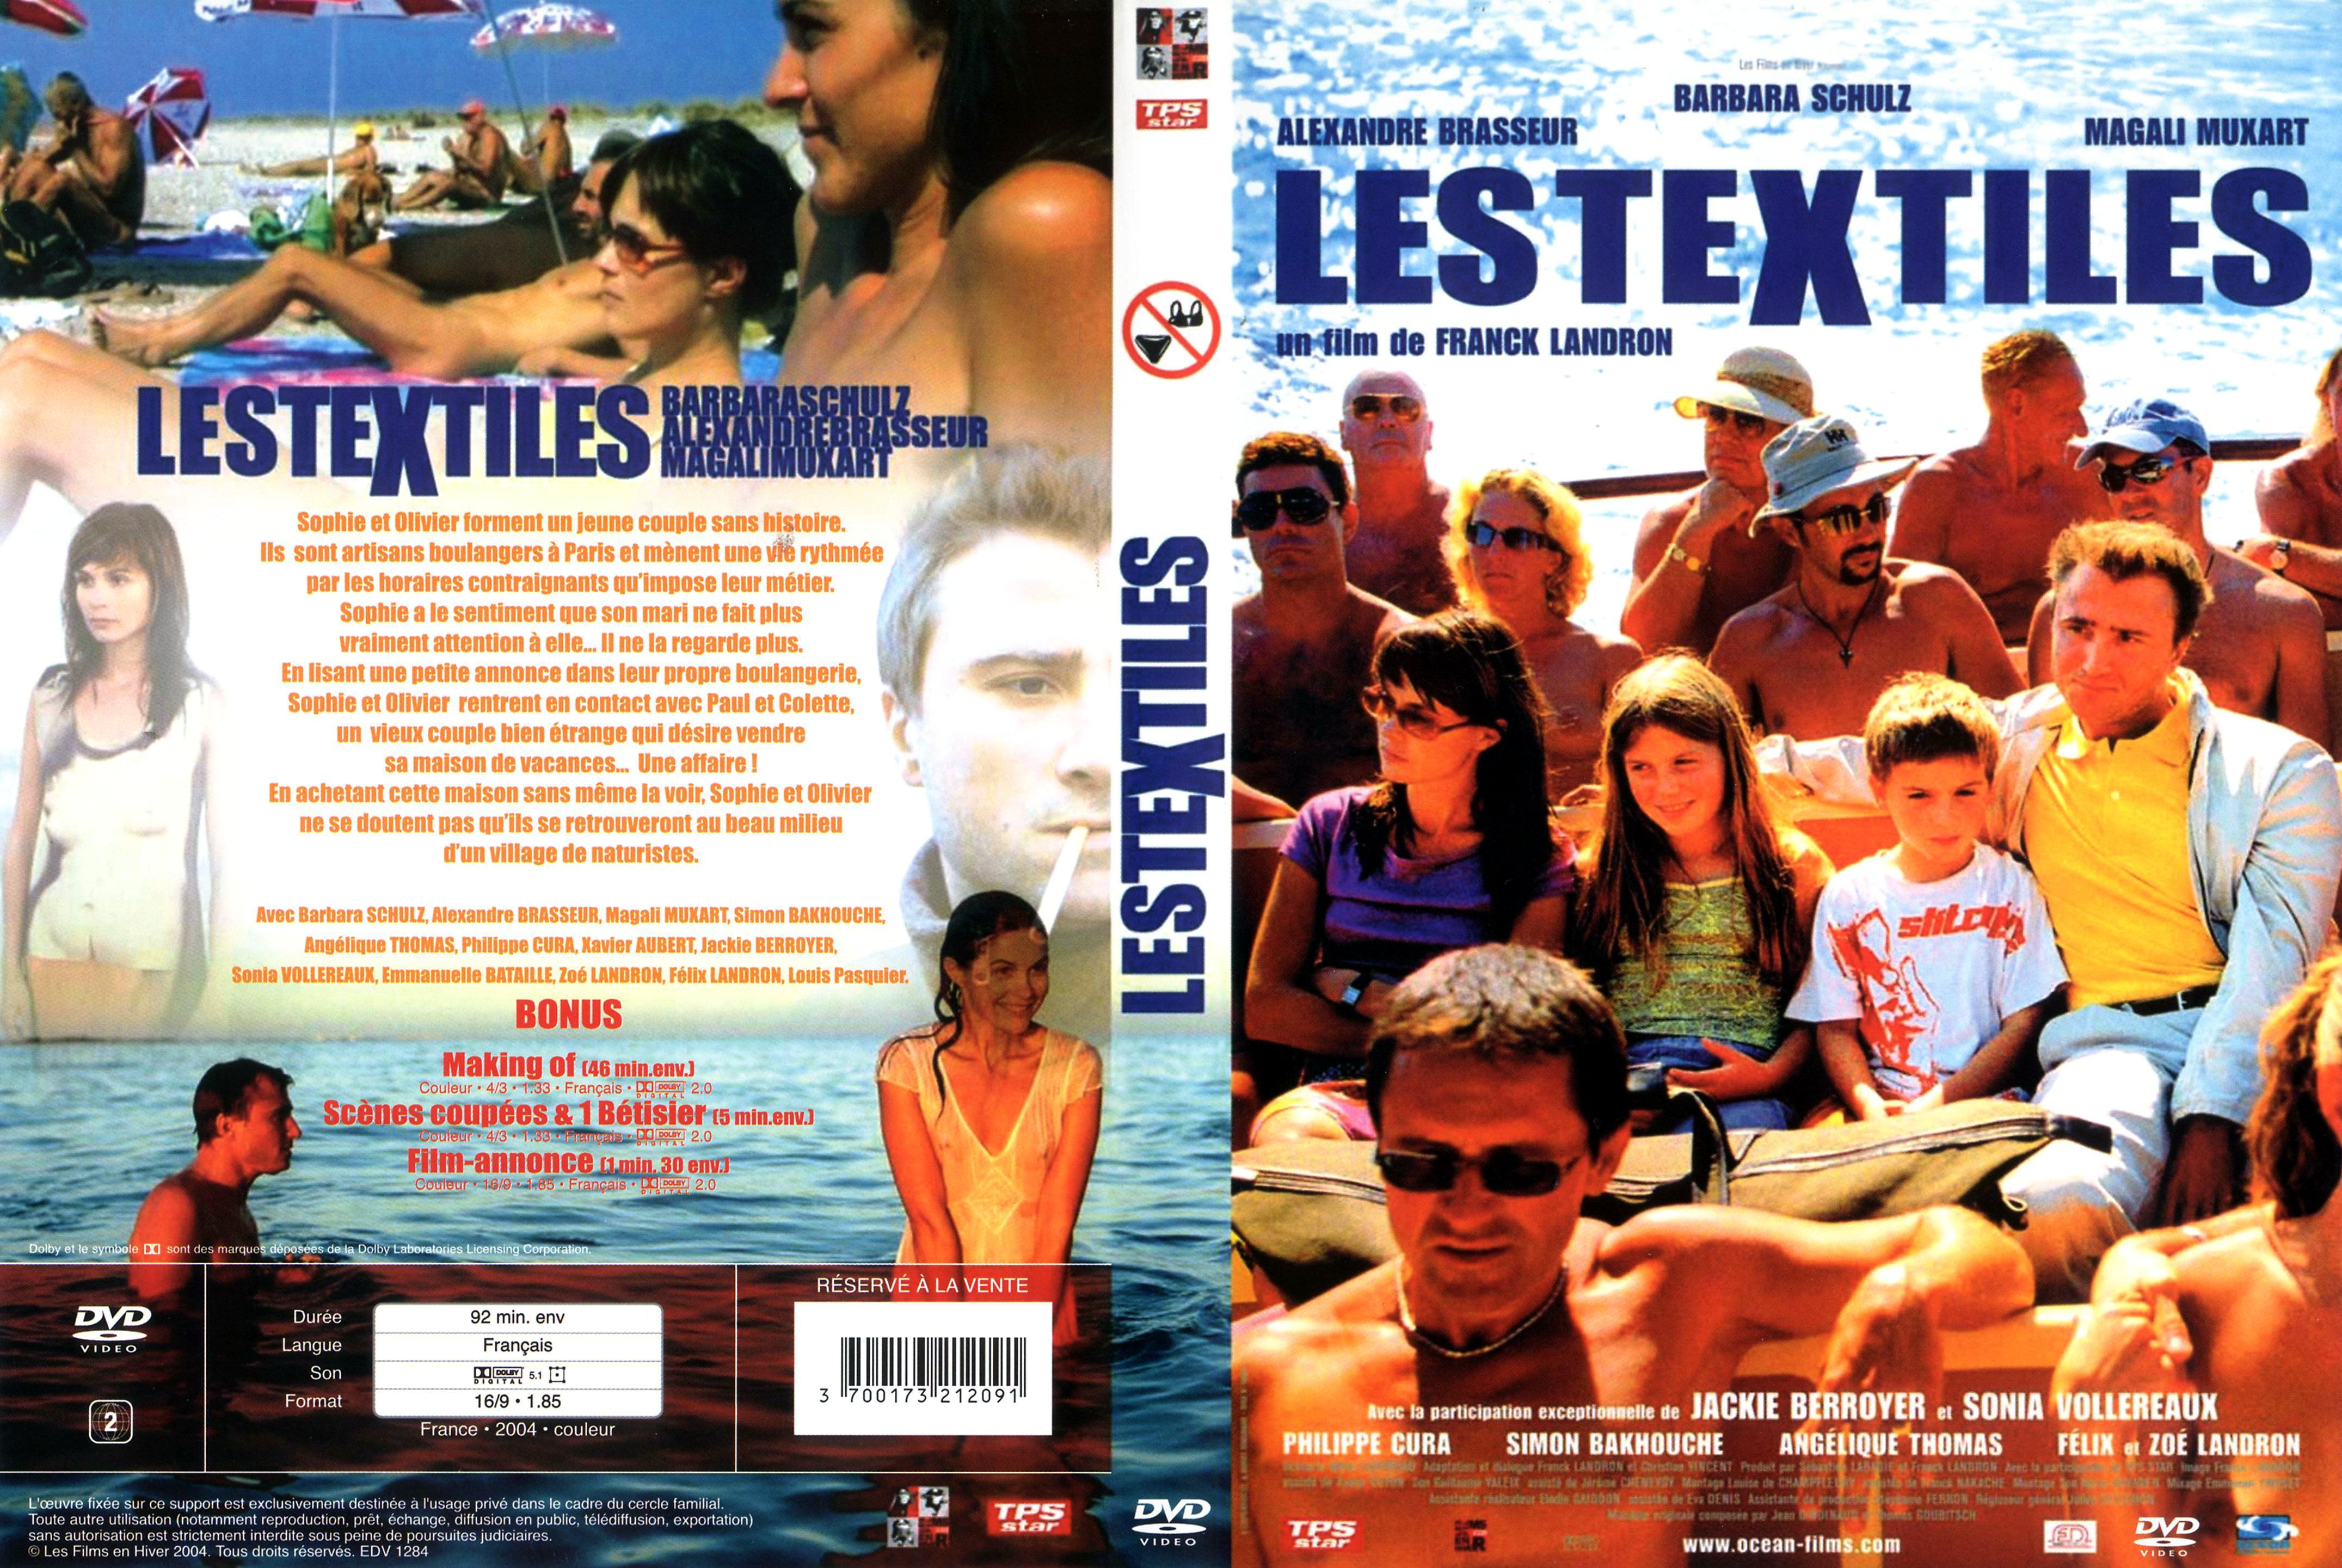 Jaquette DVD Les textiles v2